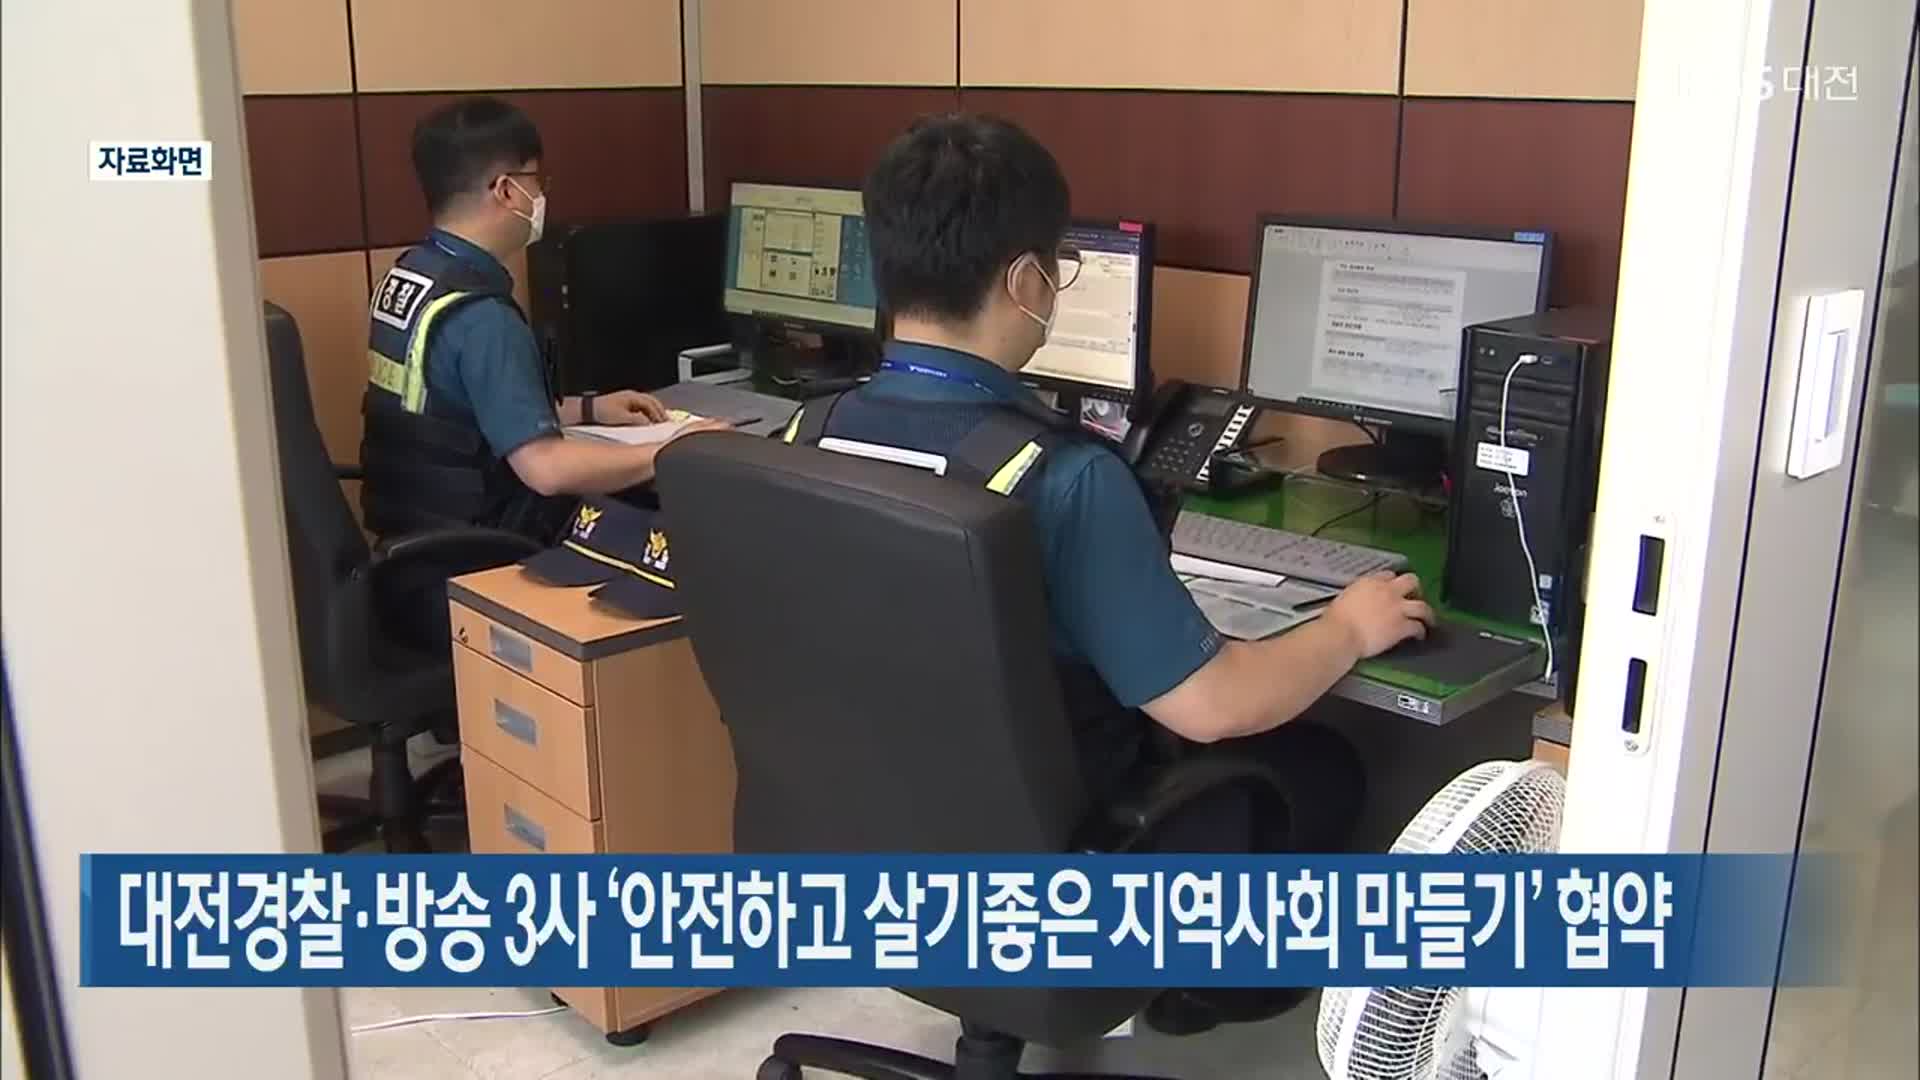 대전경찰·방송 3사 ‘안전하고 살기좋은 지역사회 만들기’ 협약